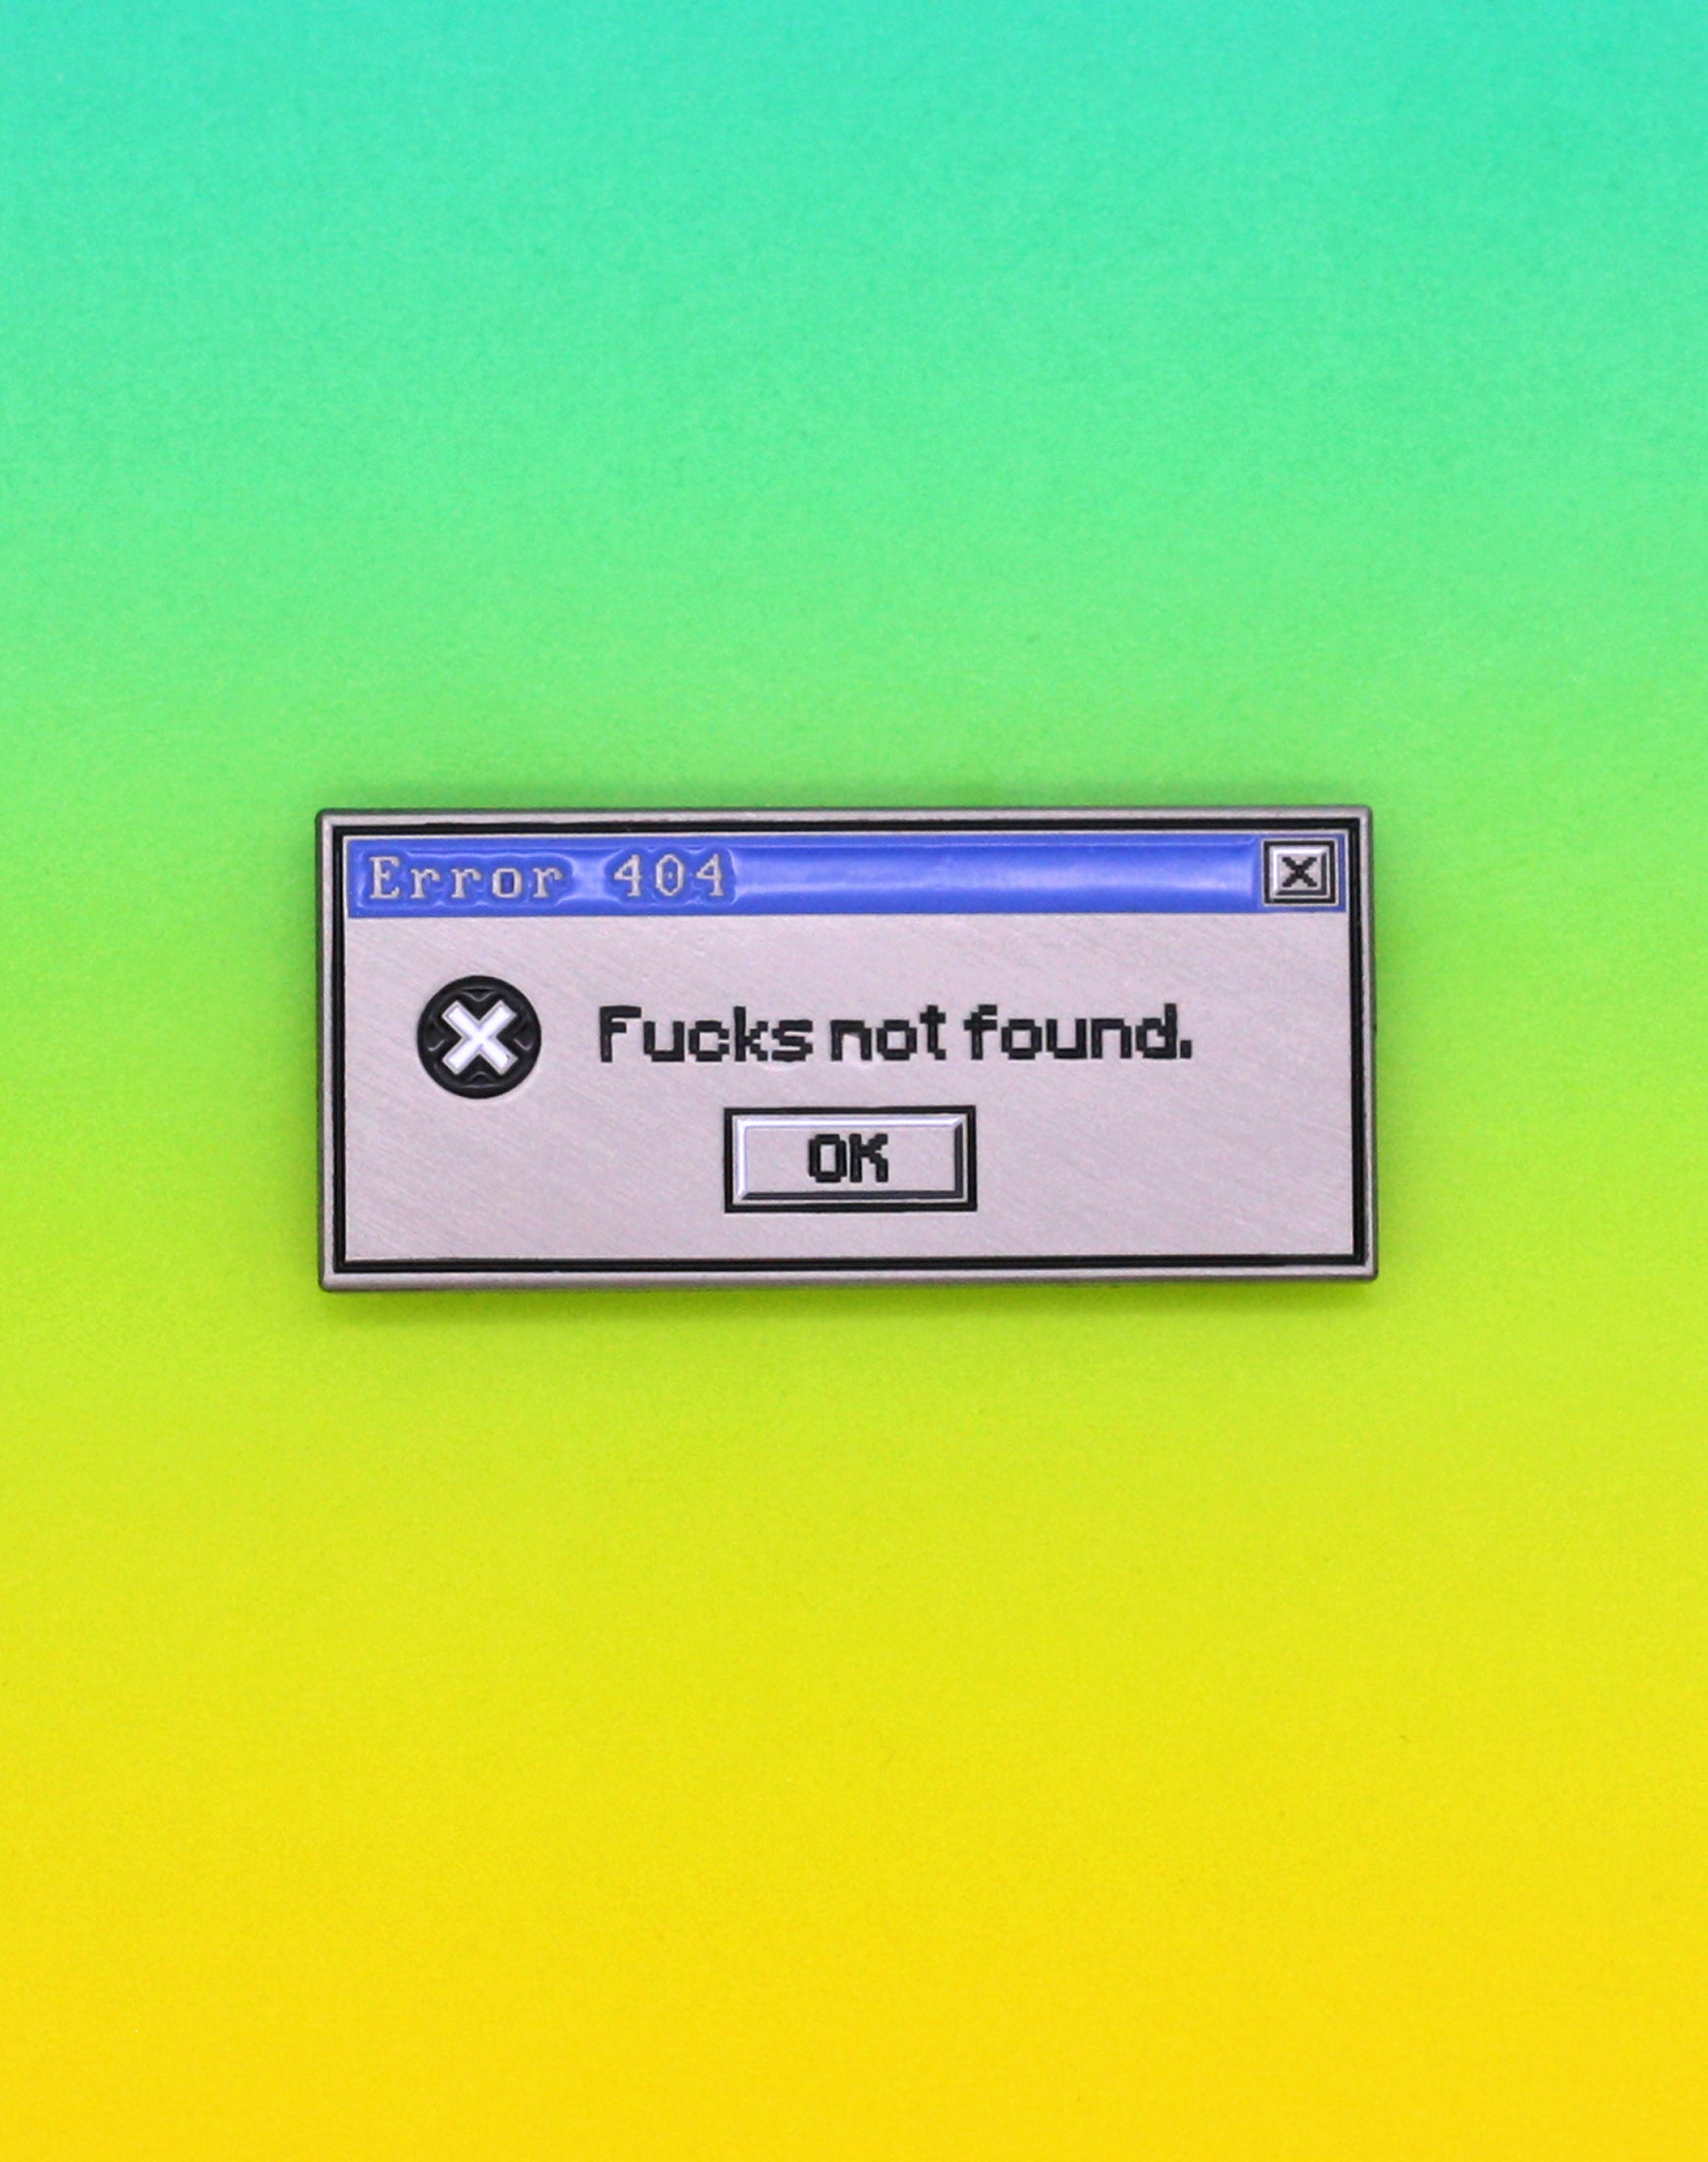 Windows 95 Error 404 Rude Fucks not found designer pin badge